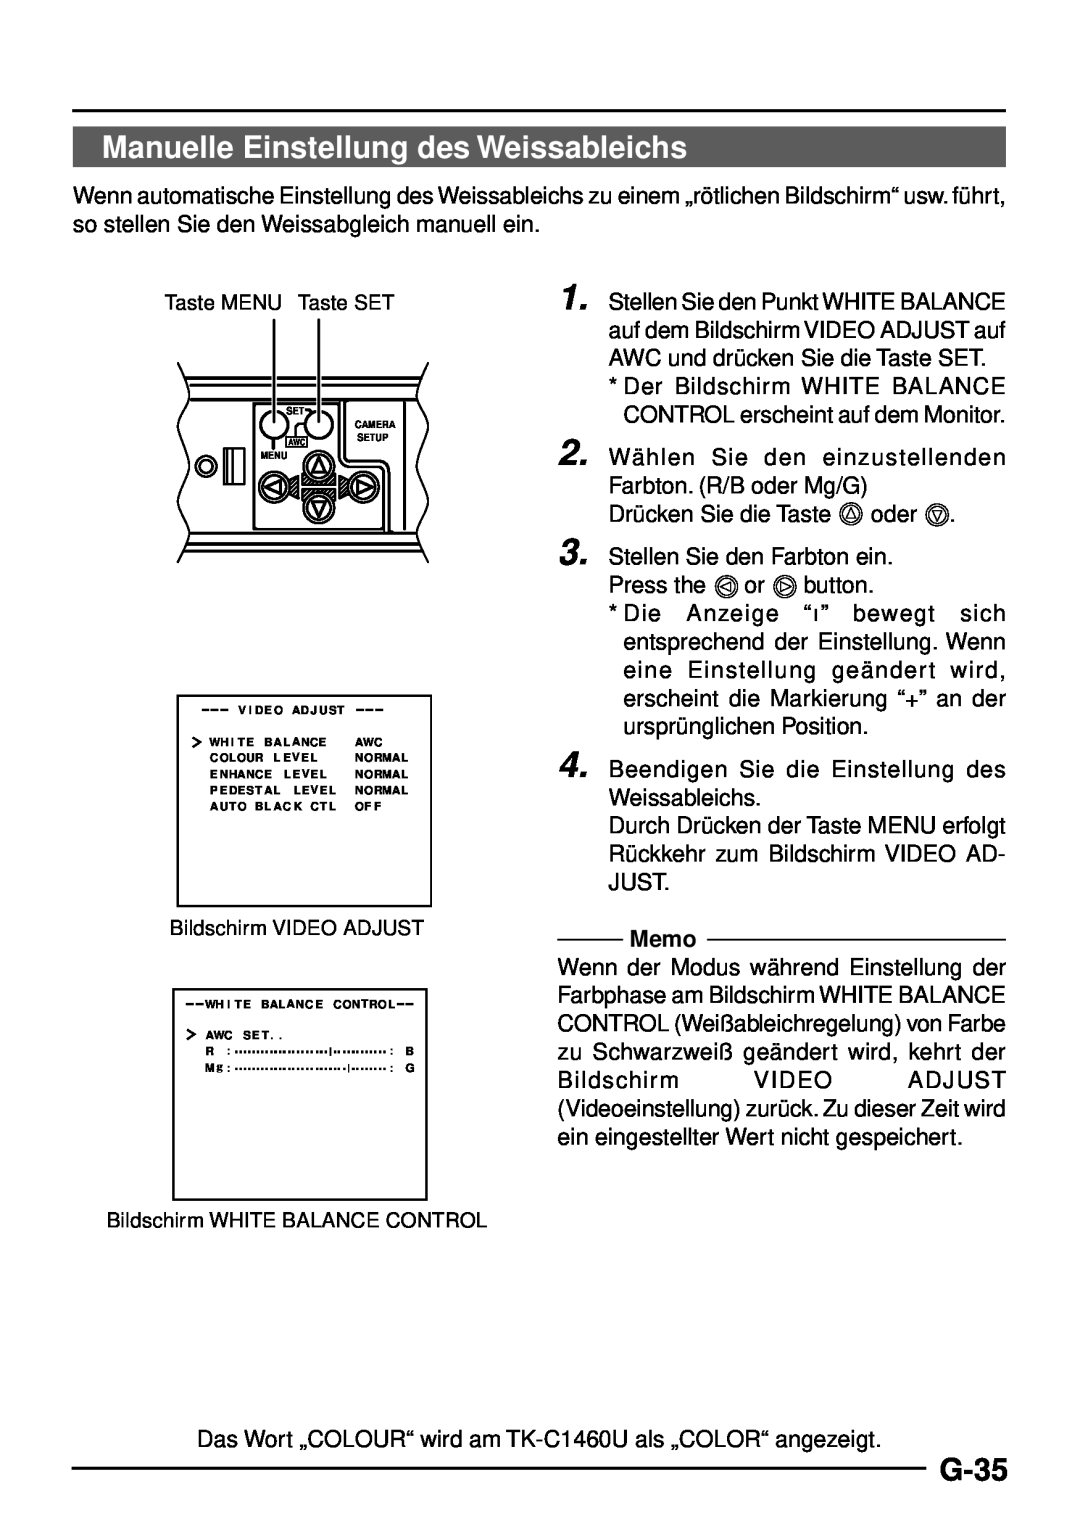 JVC TK-C1460 manual Manuelle Einstellung des Weissableichs, G-35, Memo 